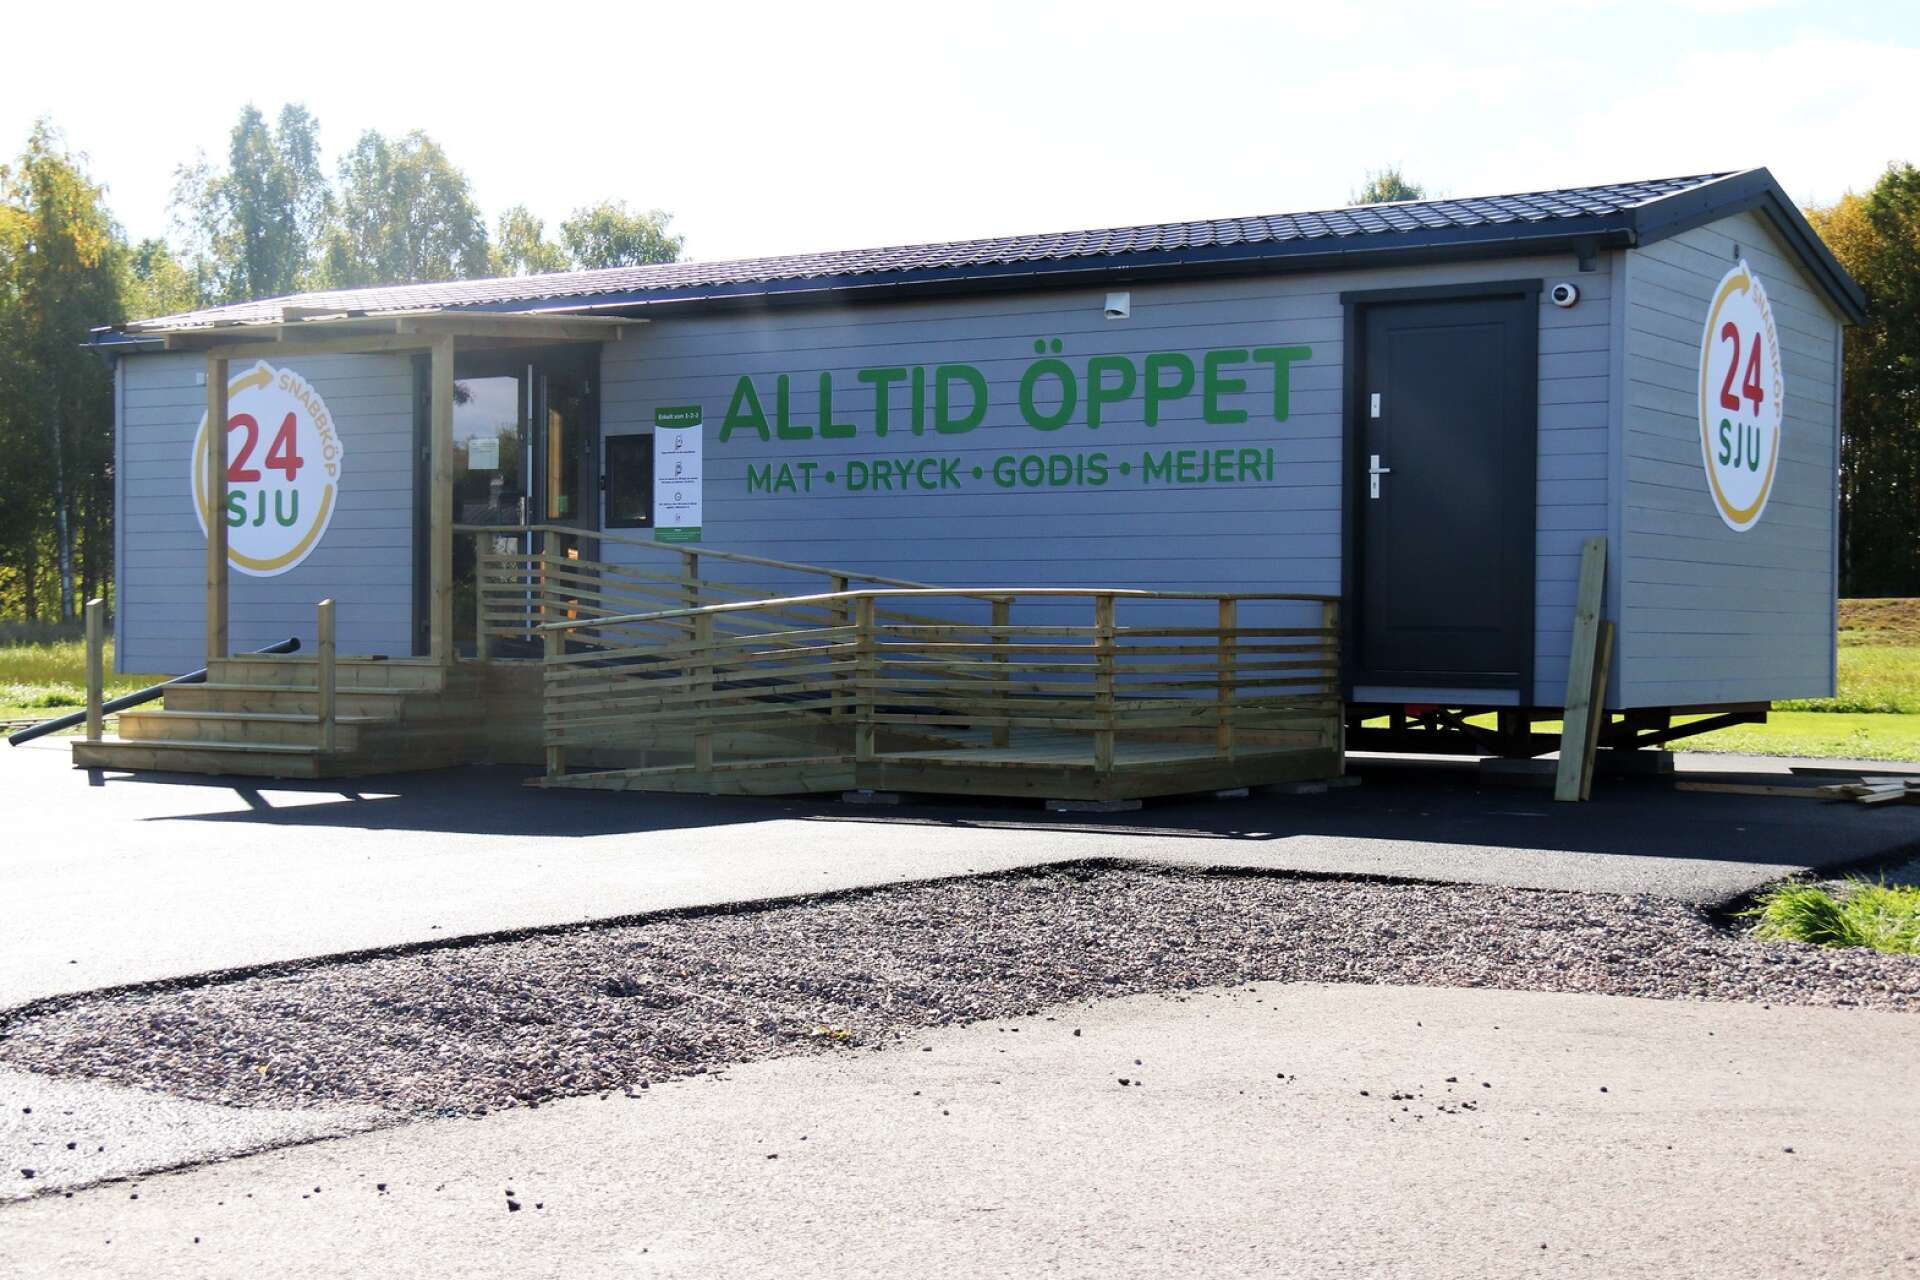 Obemannade livsmedelsbutik finns på lite olika håll och diskuteras i denna insändare. Bilden är från en butik i Västra Ämtervik.